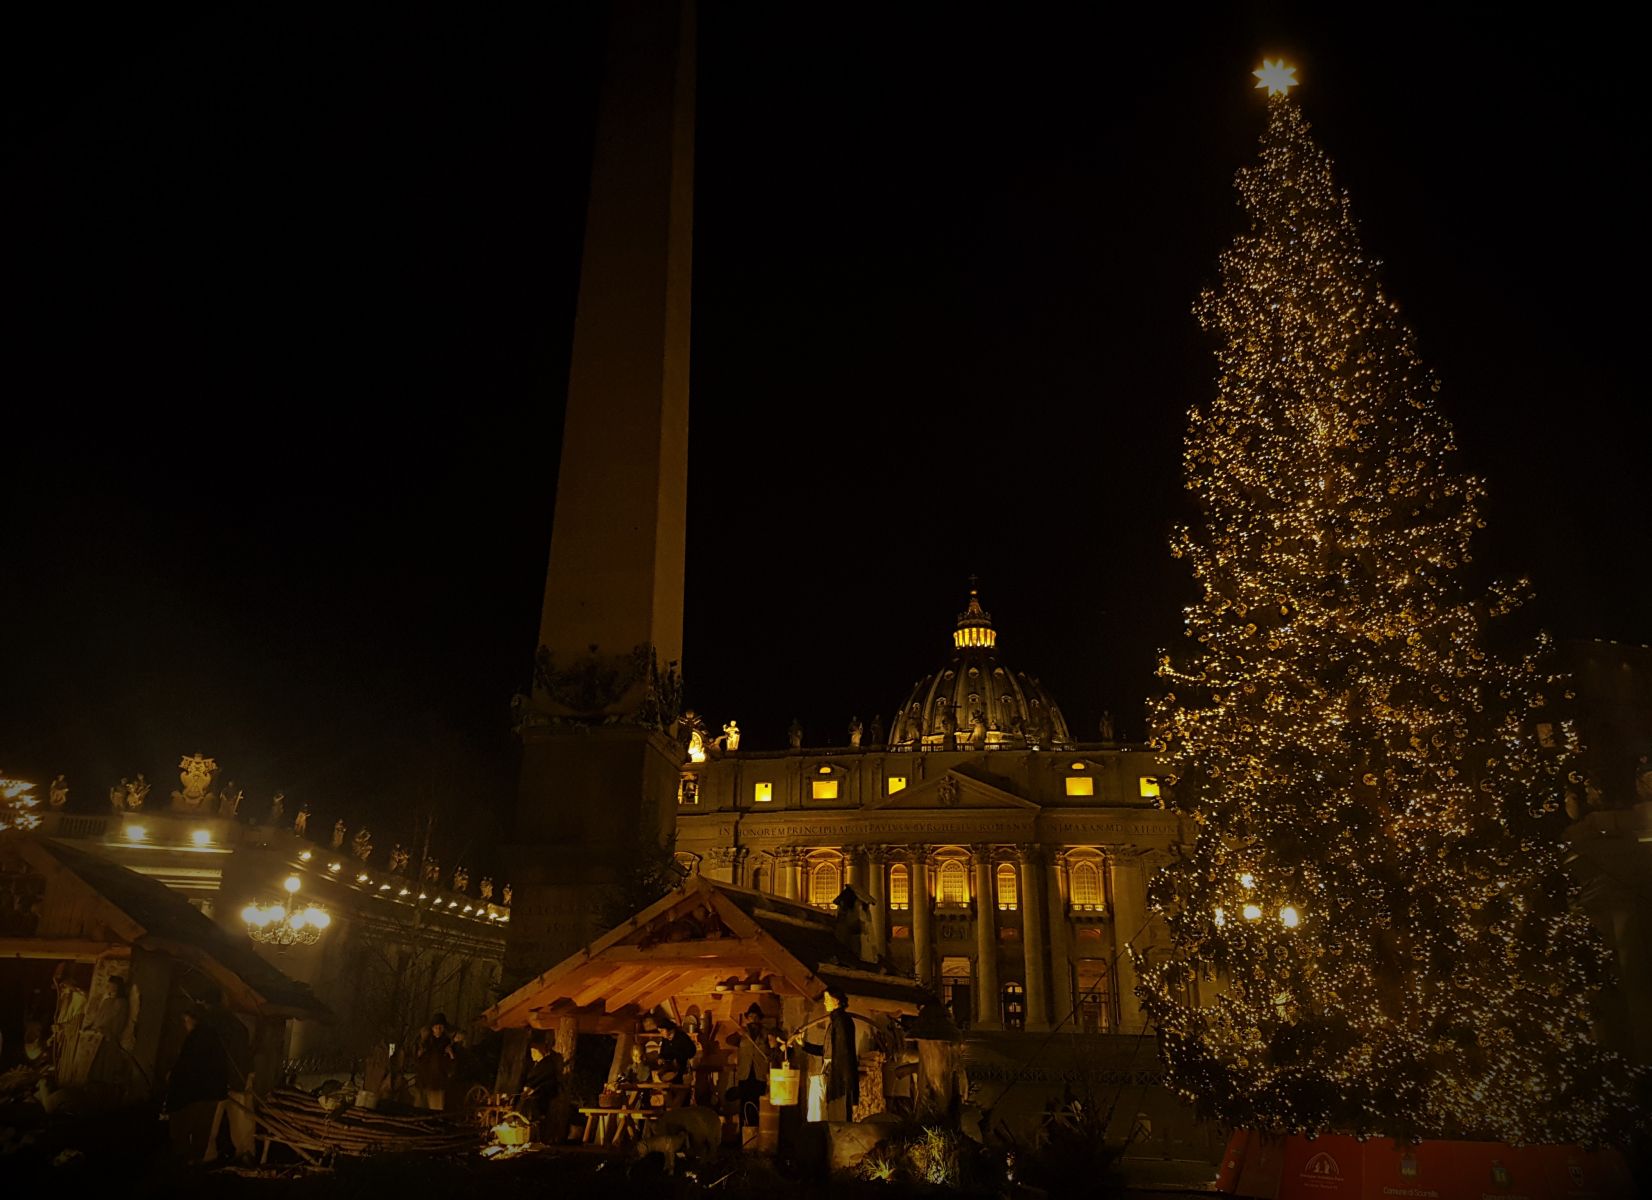 Noël à Rome